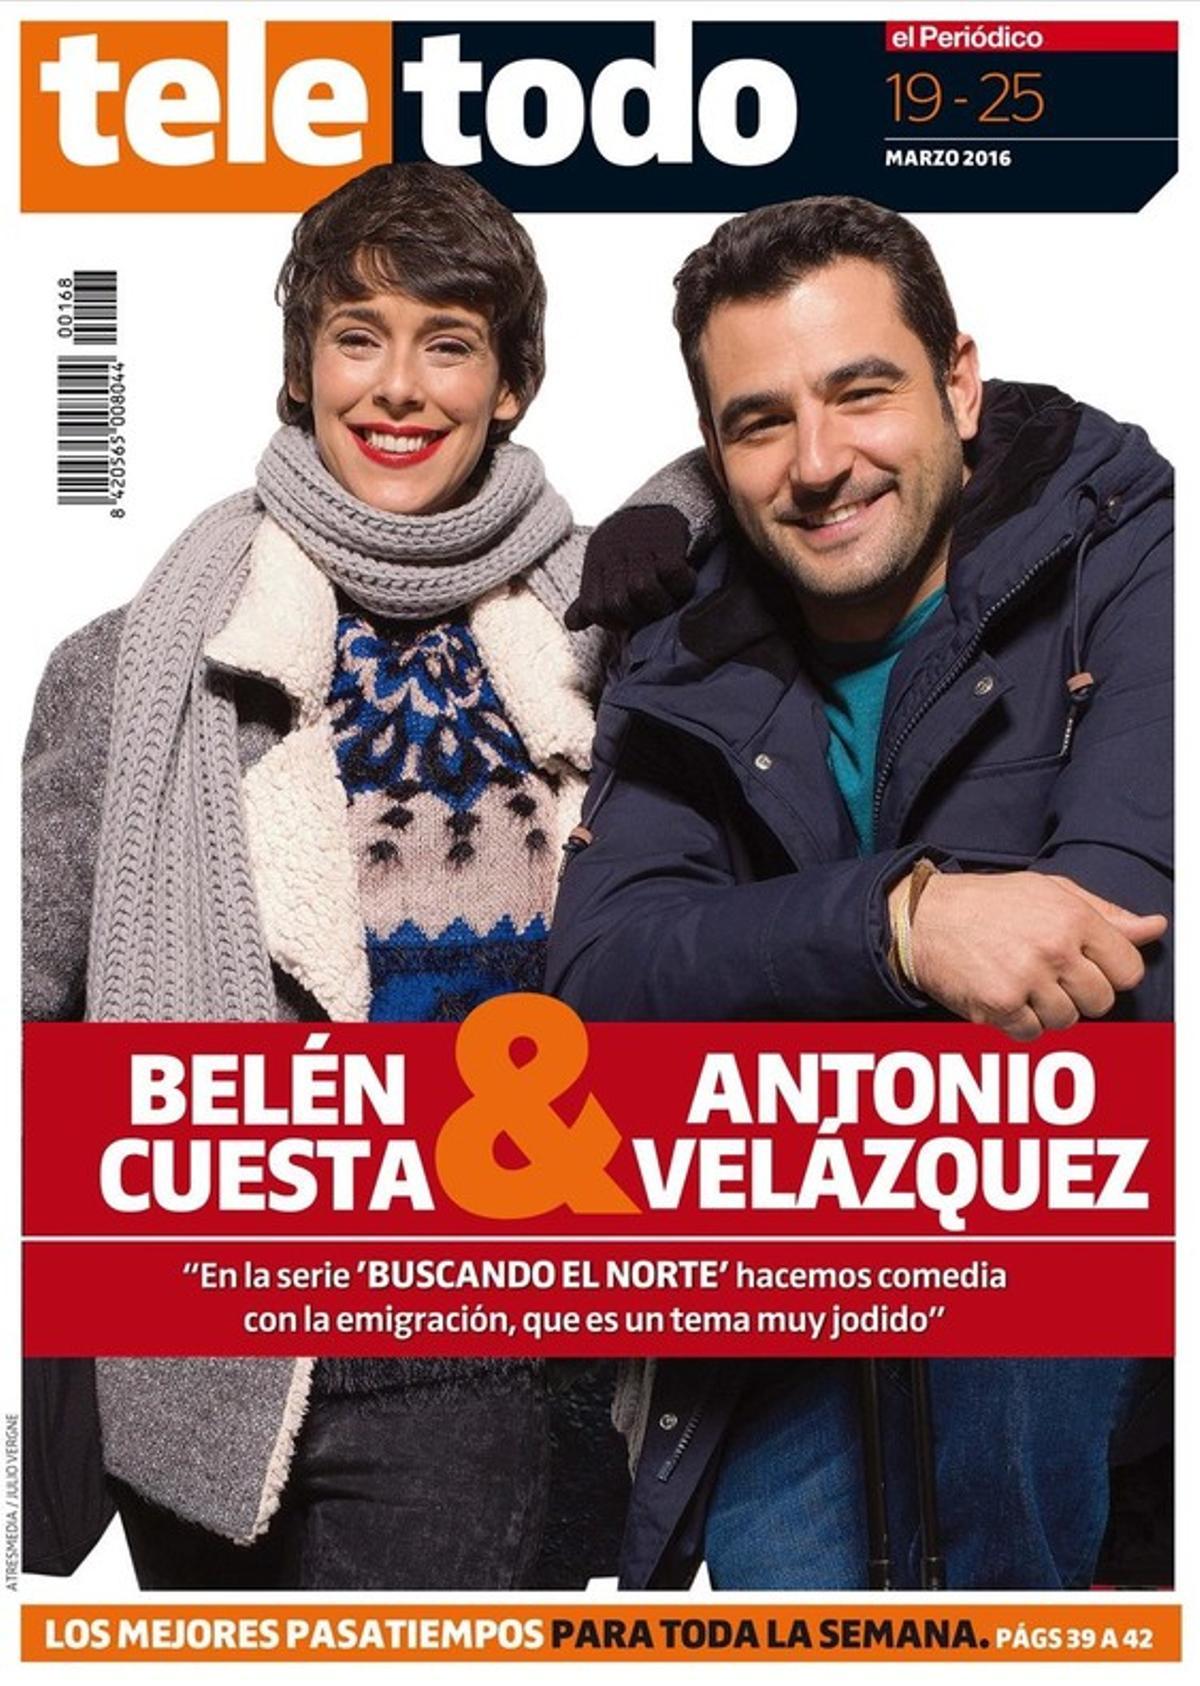 Portada del suplemento ’Teletodo’ protagonizada por Antonio Velázquez y Belén Cuesta.